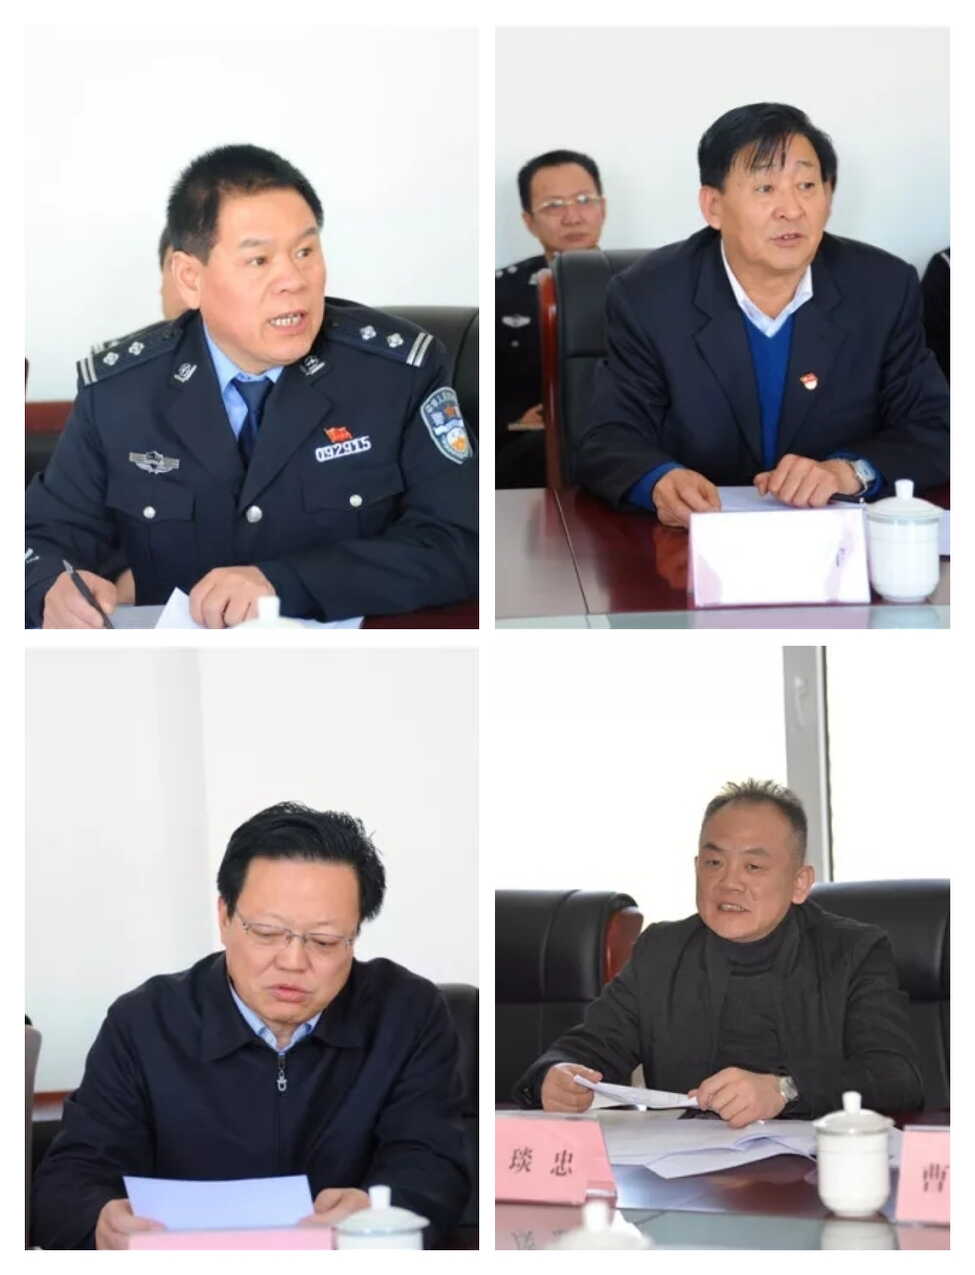 公安局副局长赵国明汇报了两起涉黑案件的侦破进展情况